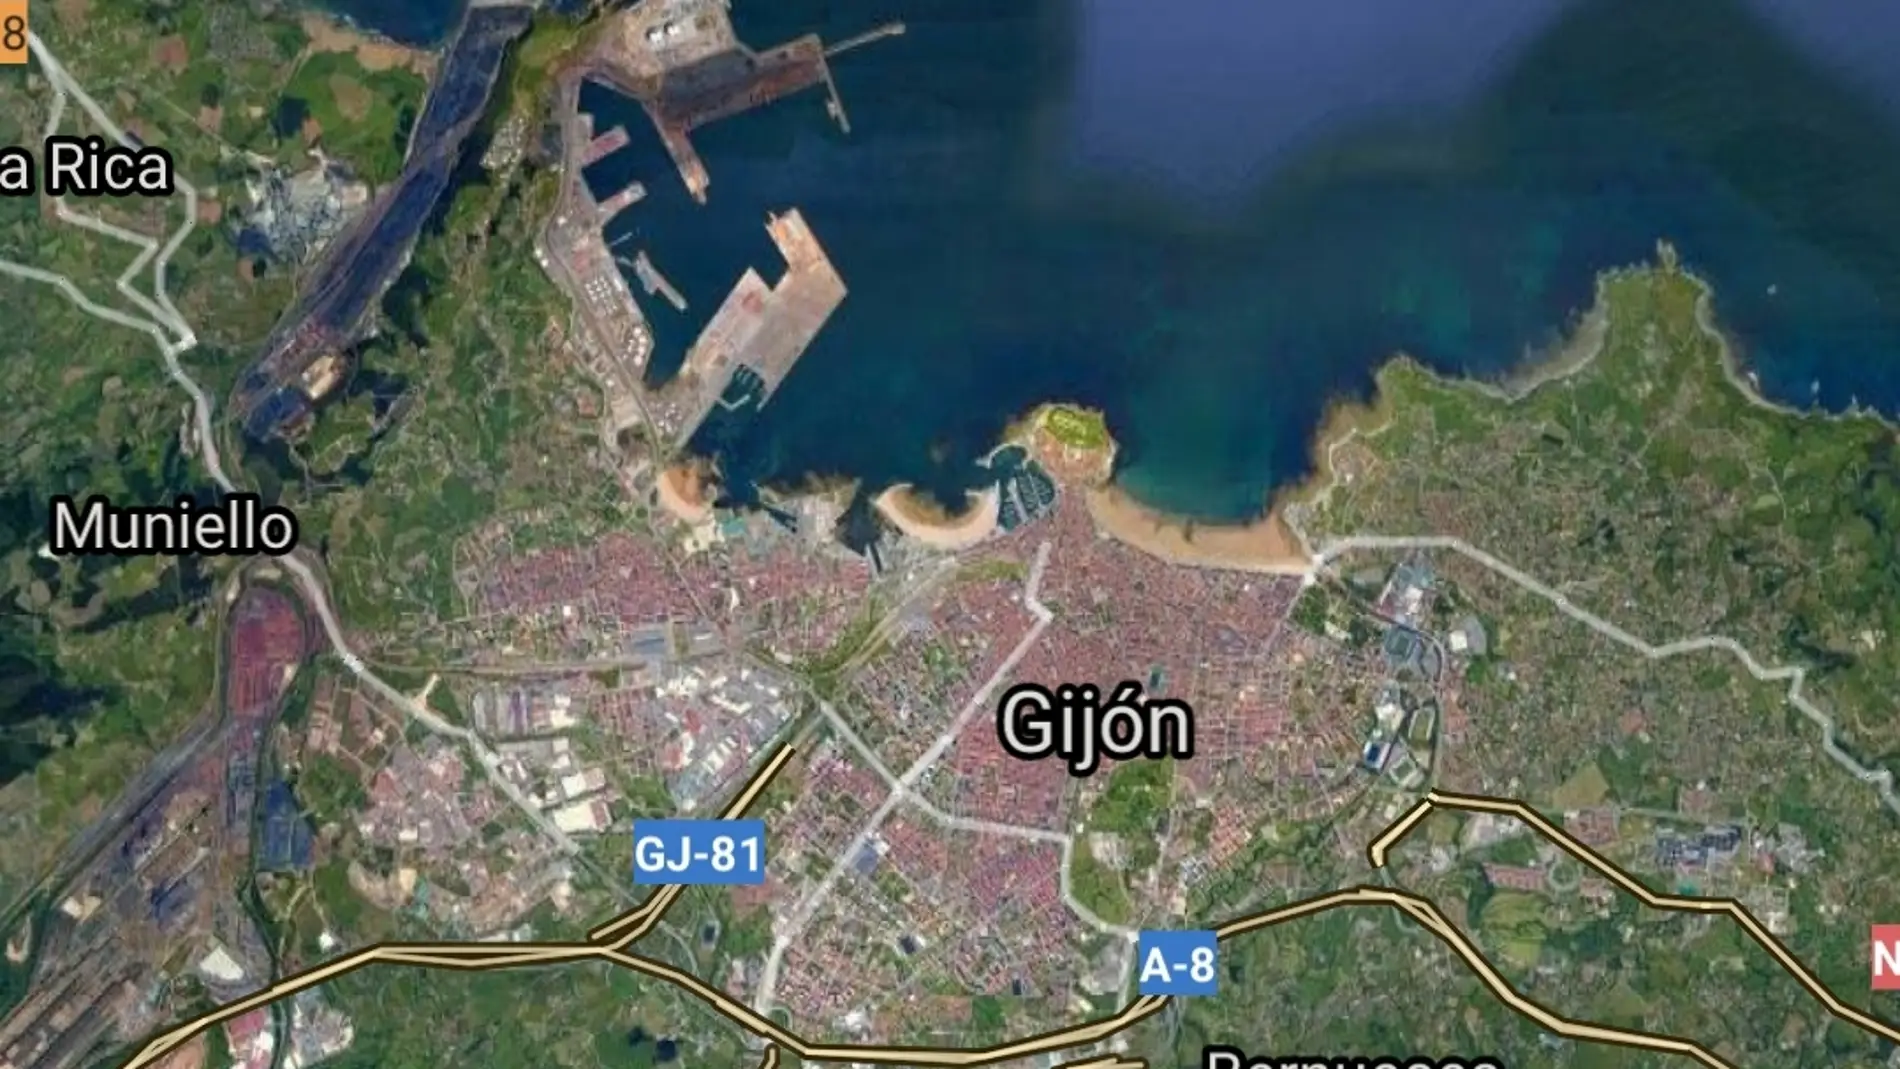 Gijón maps